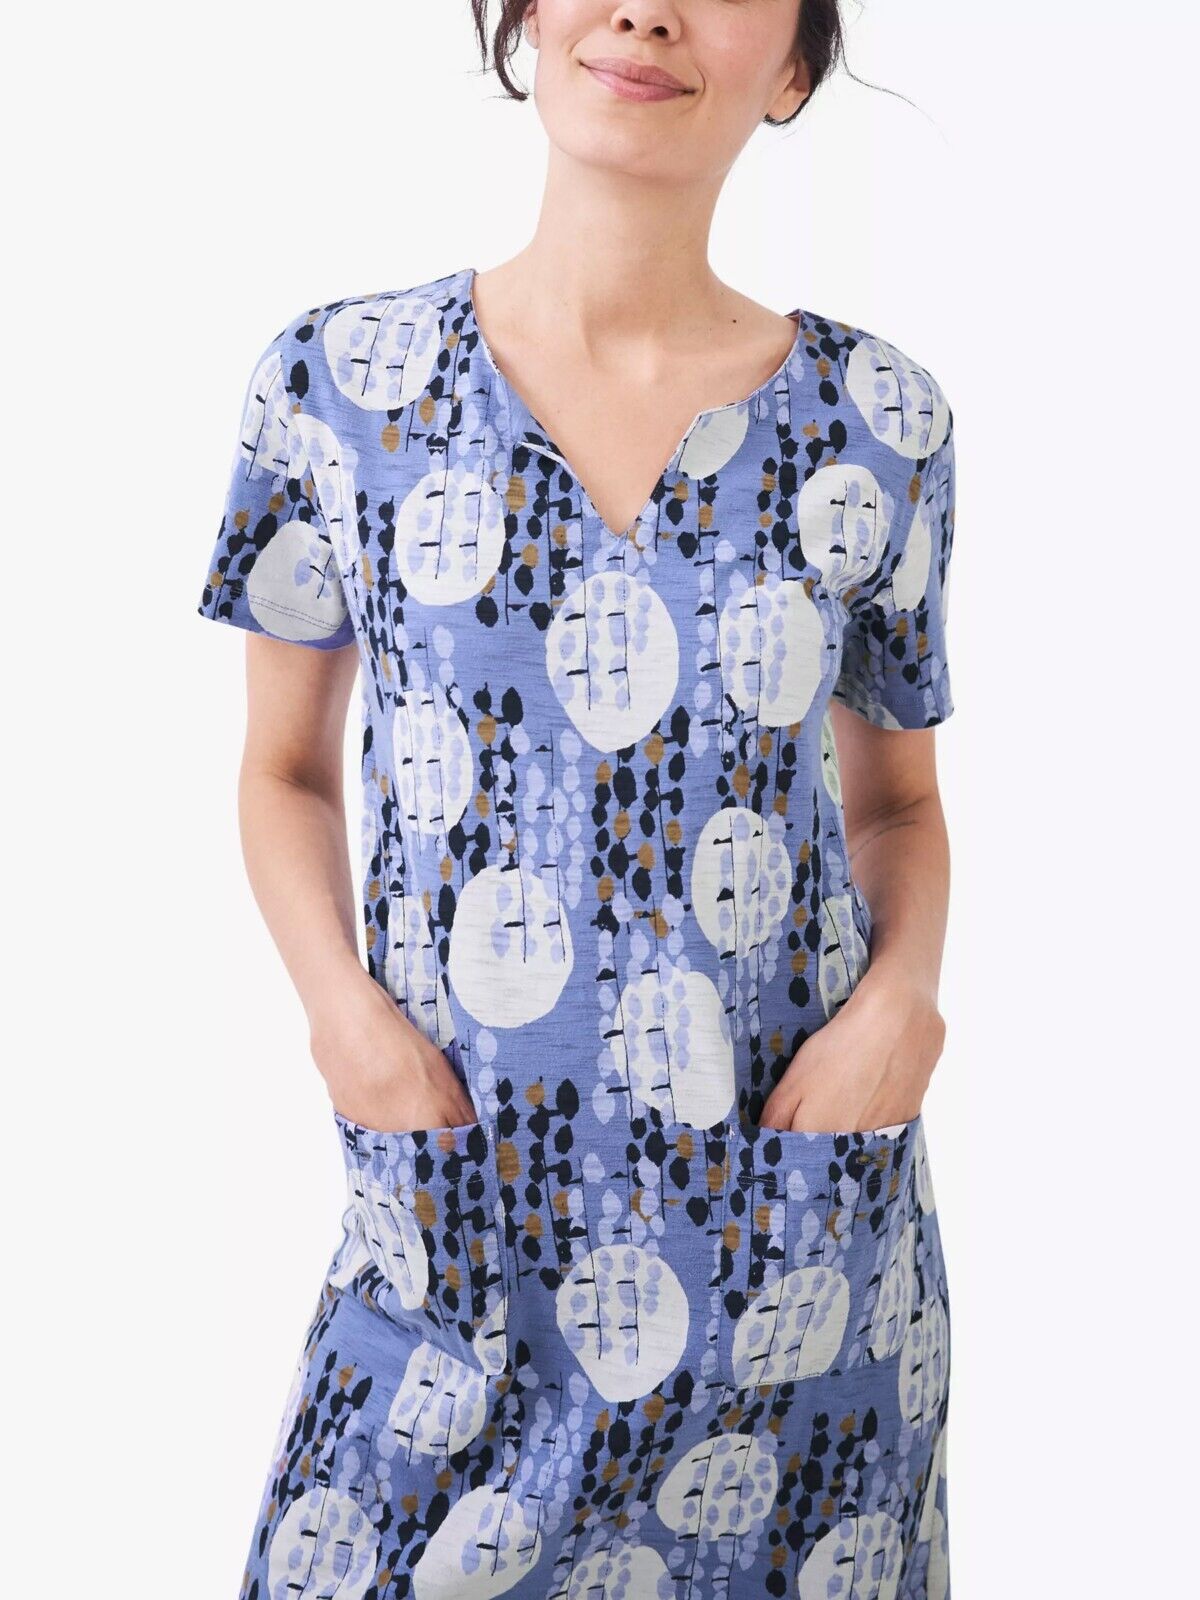 EX WHITE STUFF Blue Jenna Circles Print Jersey Dress Sizes 8 10 12 14 16 20 22